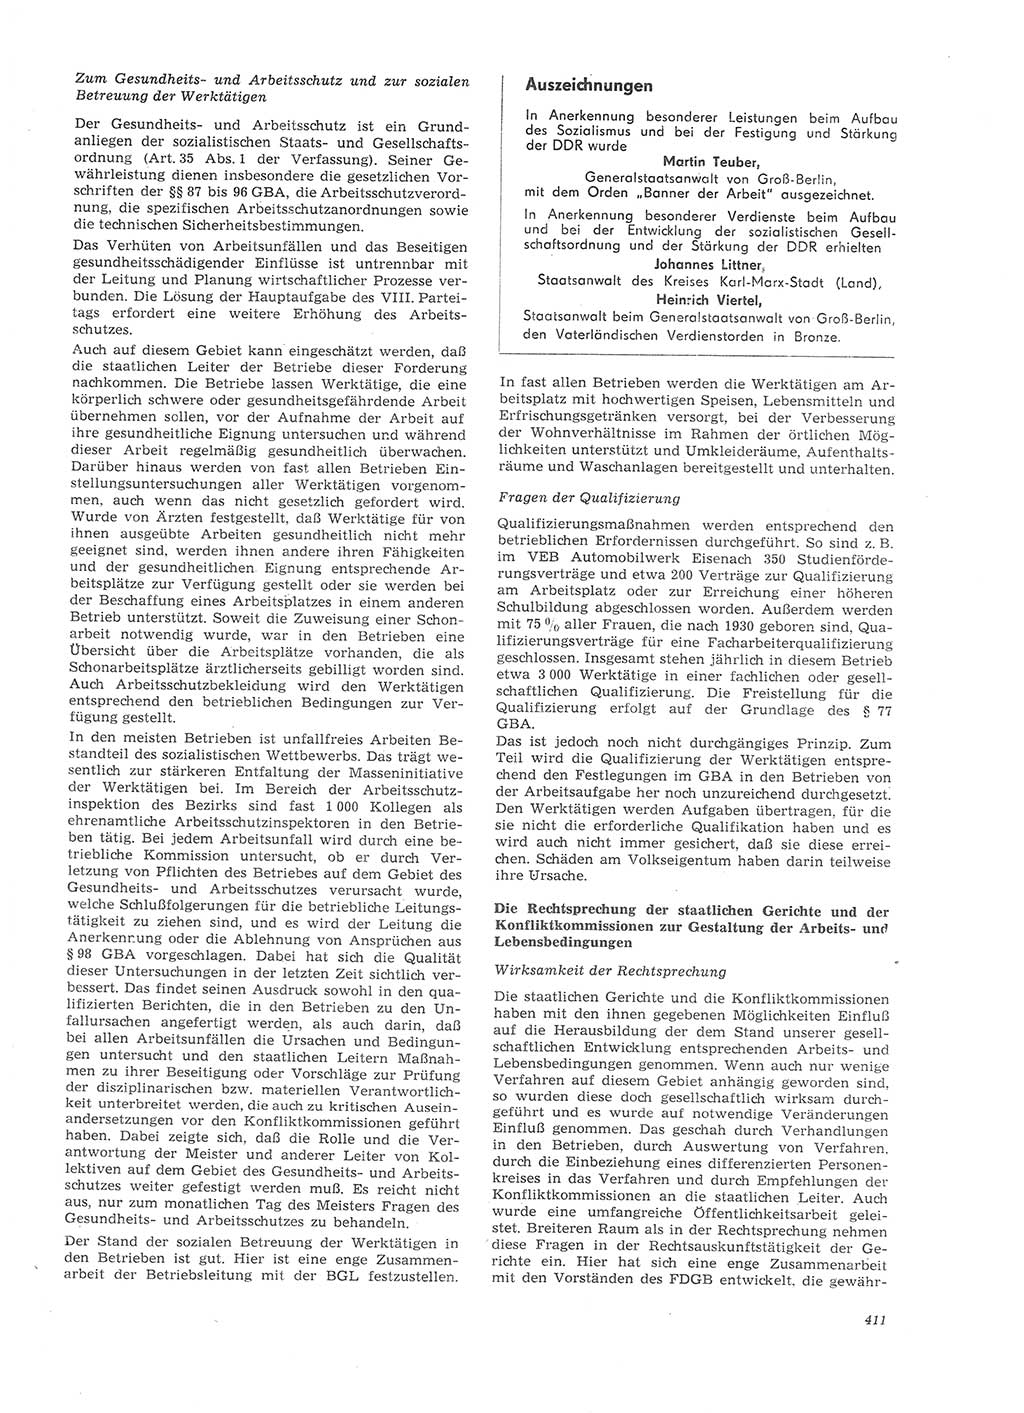 Neue Justiz (NJ), Zeitschrift für Recht und Rechtswissenschaft [Deutsche Demokratische Republik (DDR)], 26. Jahrgang 1972, Seite 411 (NJ DDR 1972, S. 411)